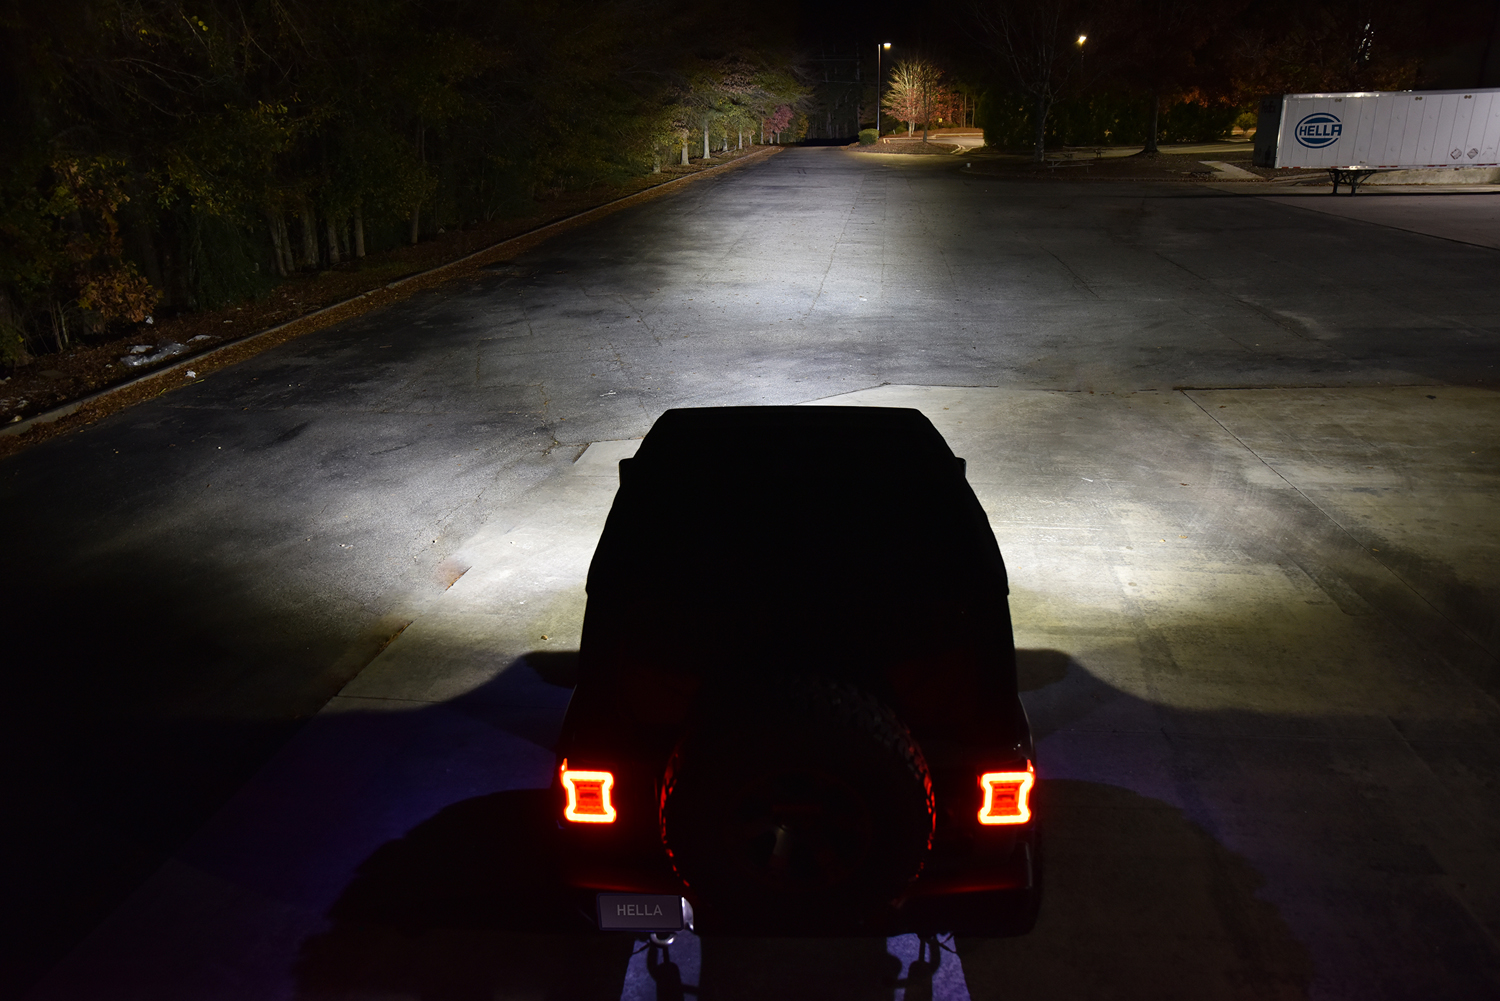  HELLA 358176201 Black Magic LED Series 6.2'' Mini Lightbar - LED  Flood Light - Off Road Driving Lights : Automotive